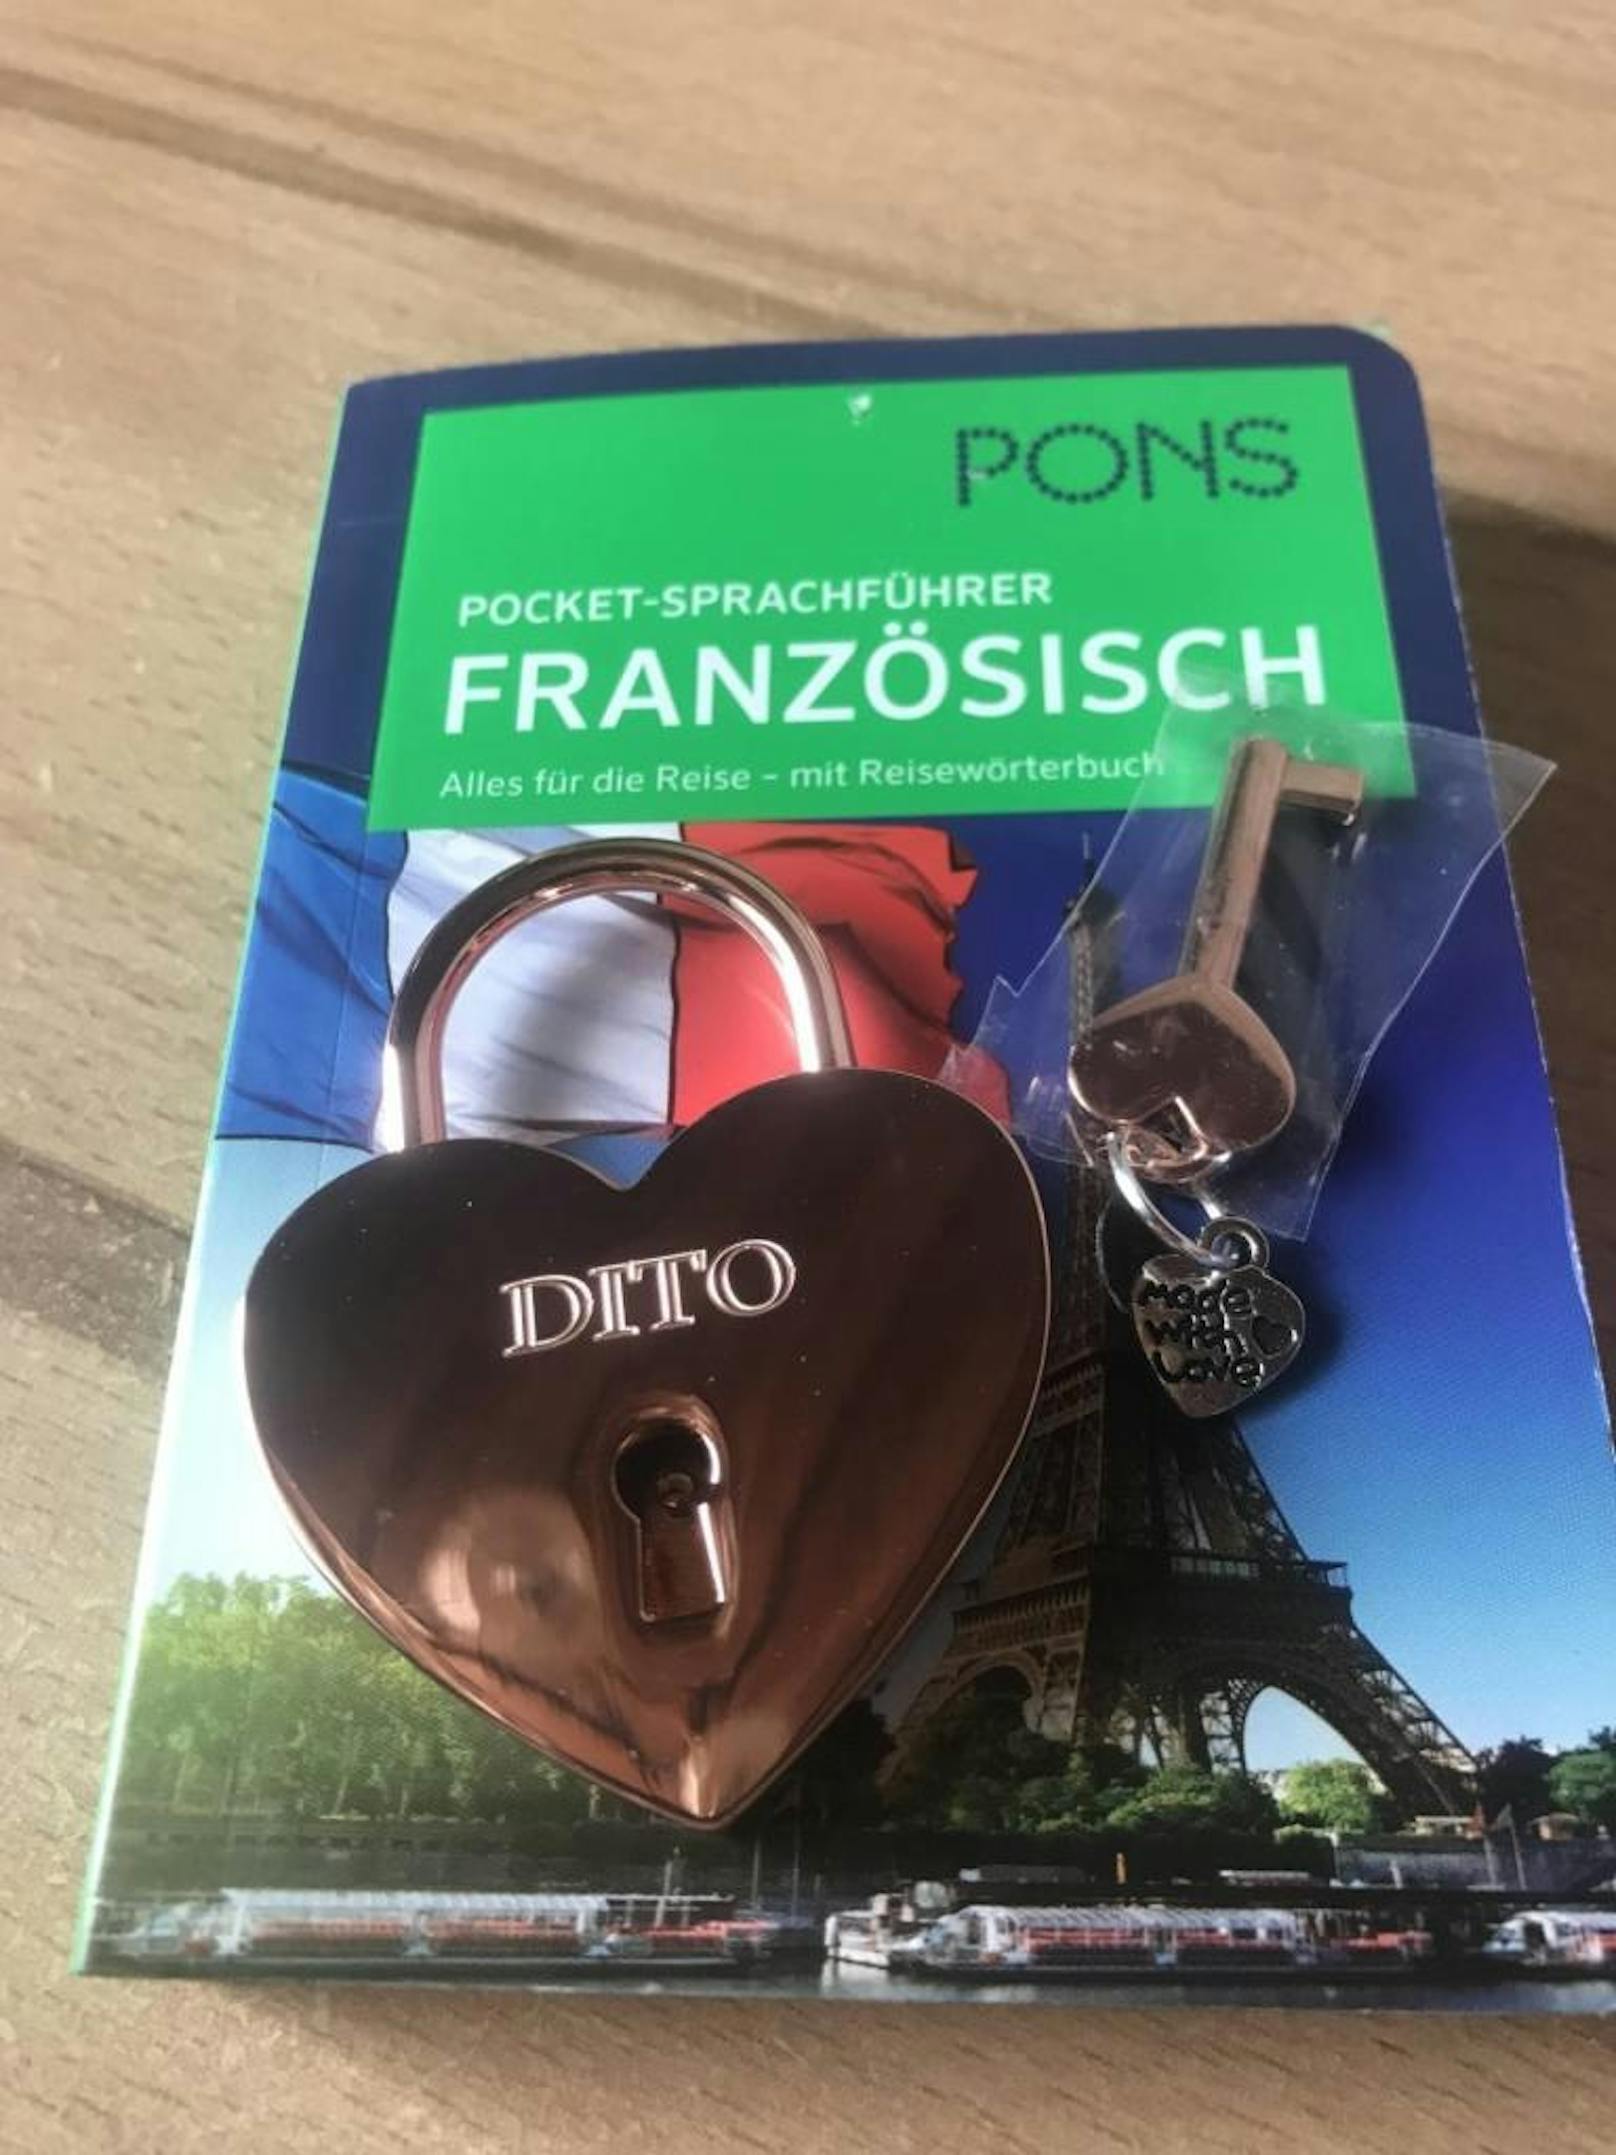 Jonas freut sich auf die Parisreise mit seiner Liebsten: "Dafür schenke ich ihr schon mal ein Liebesschloss und ein Wörterbuch."